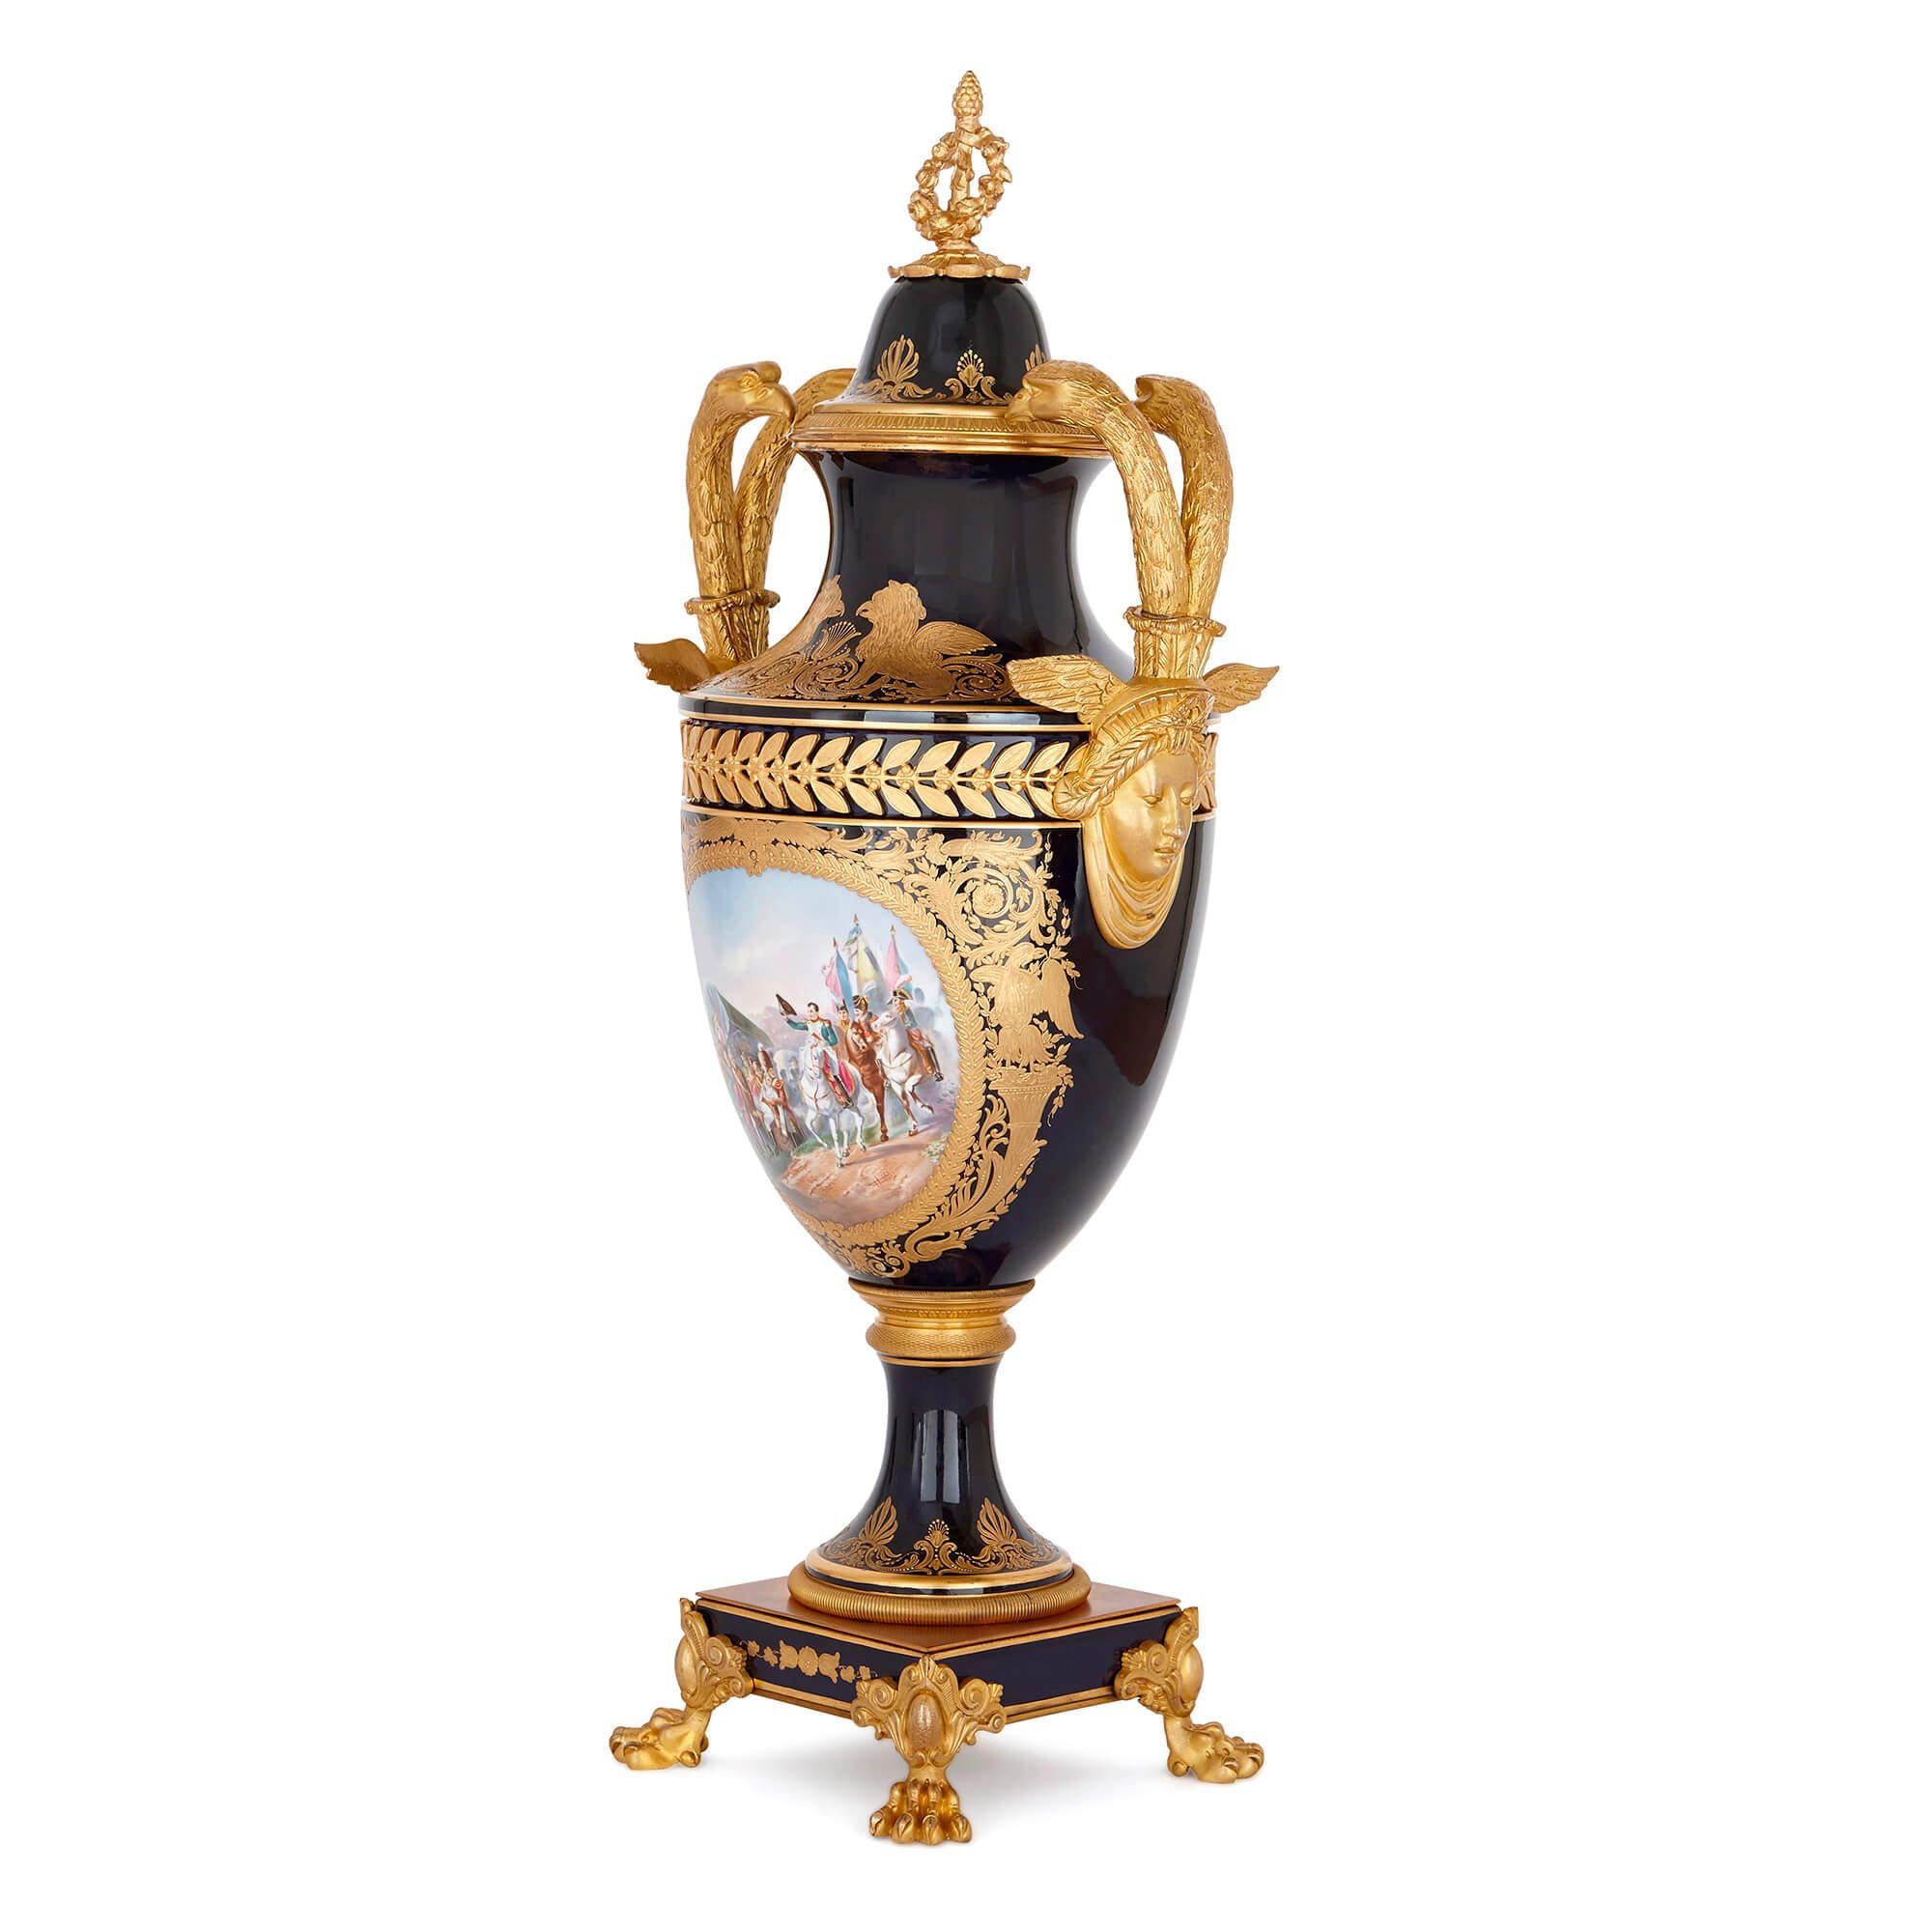 Ce vase en porcelaine de style Sèvres est magnifiquement peint d'une image de Napoléon Ier à cheval. Dans cette peinture, Napoléon rend visite à ses hommes, dont certains sont blessés, dans ce qui semble être un camp militaire. On le voit à la tête